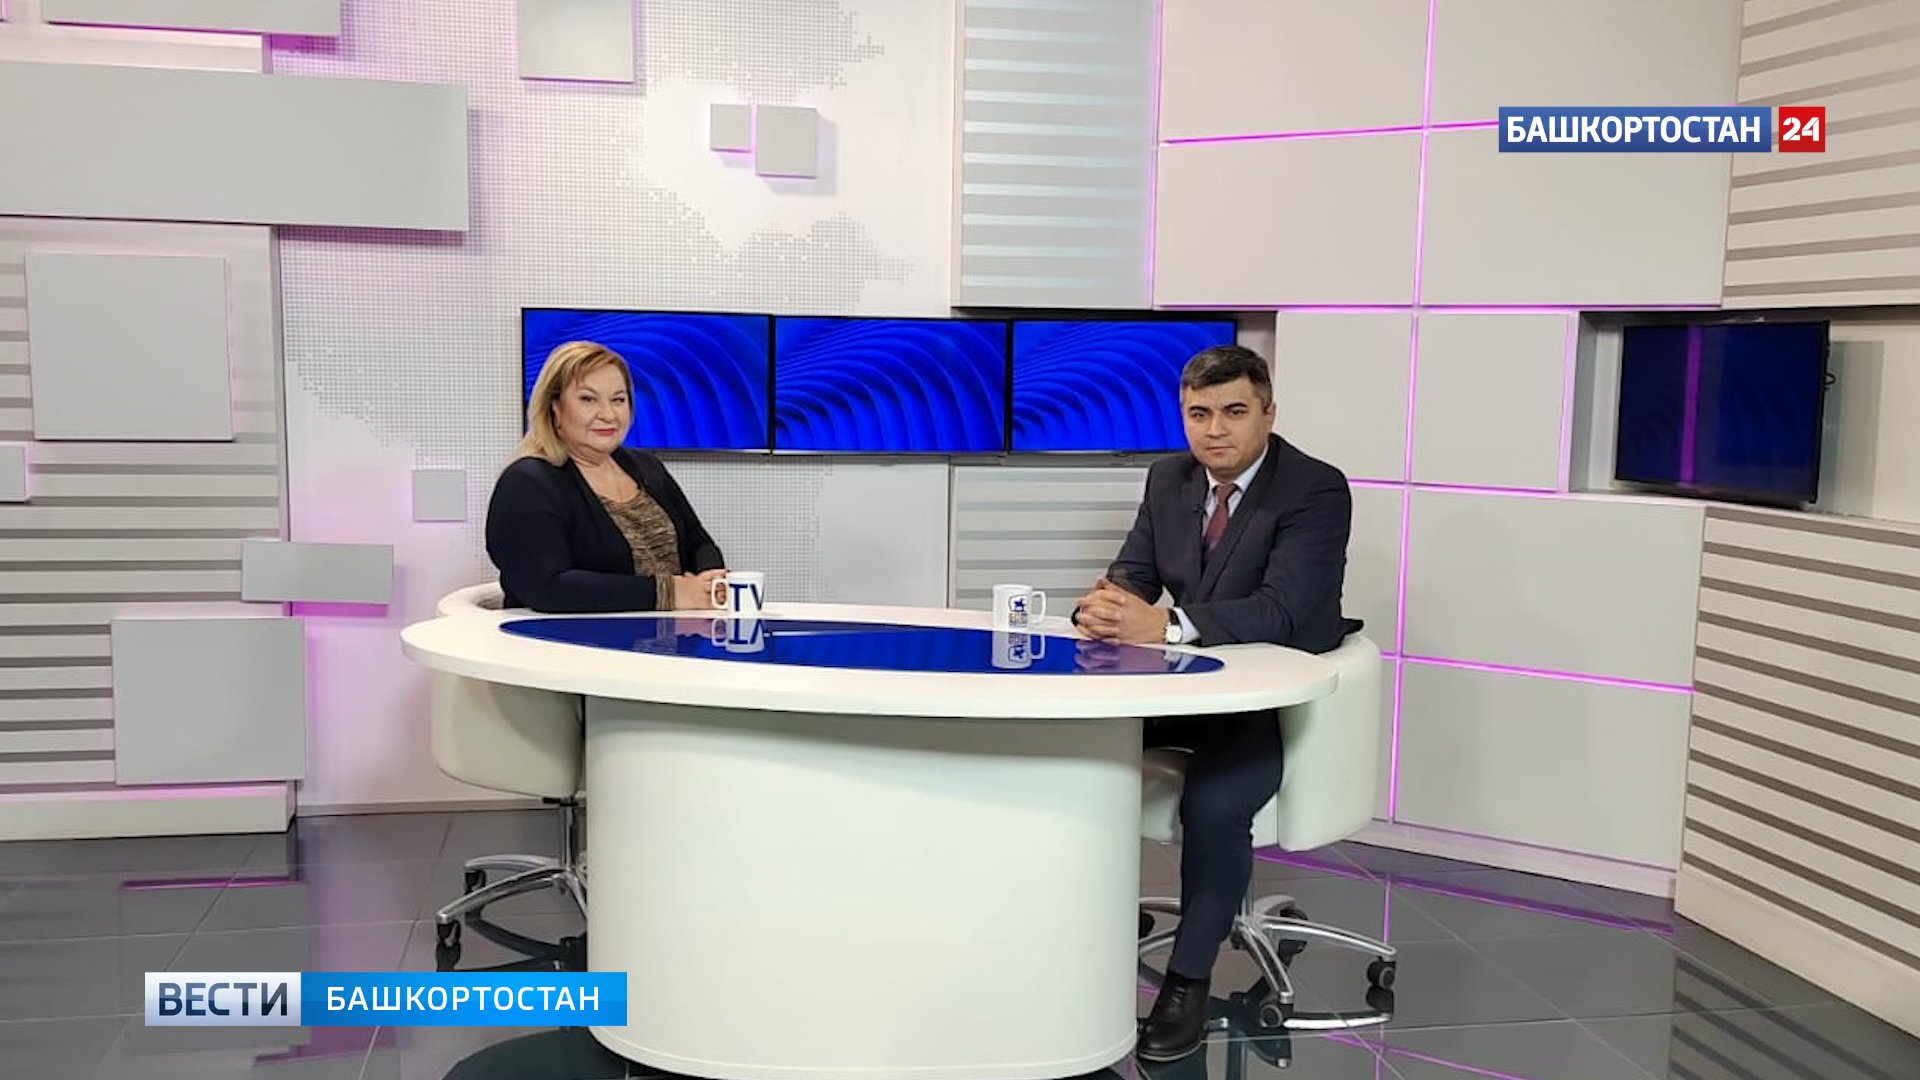 Руководитель Аппарата Правительства Башкирии Азамат Абдрахманов рассказал о своей командировке на Донбасс